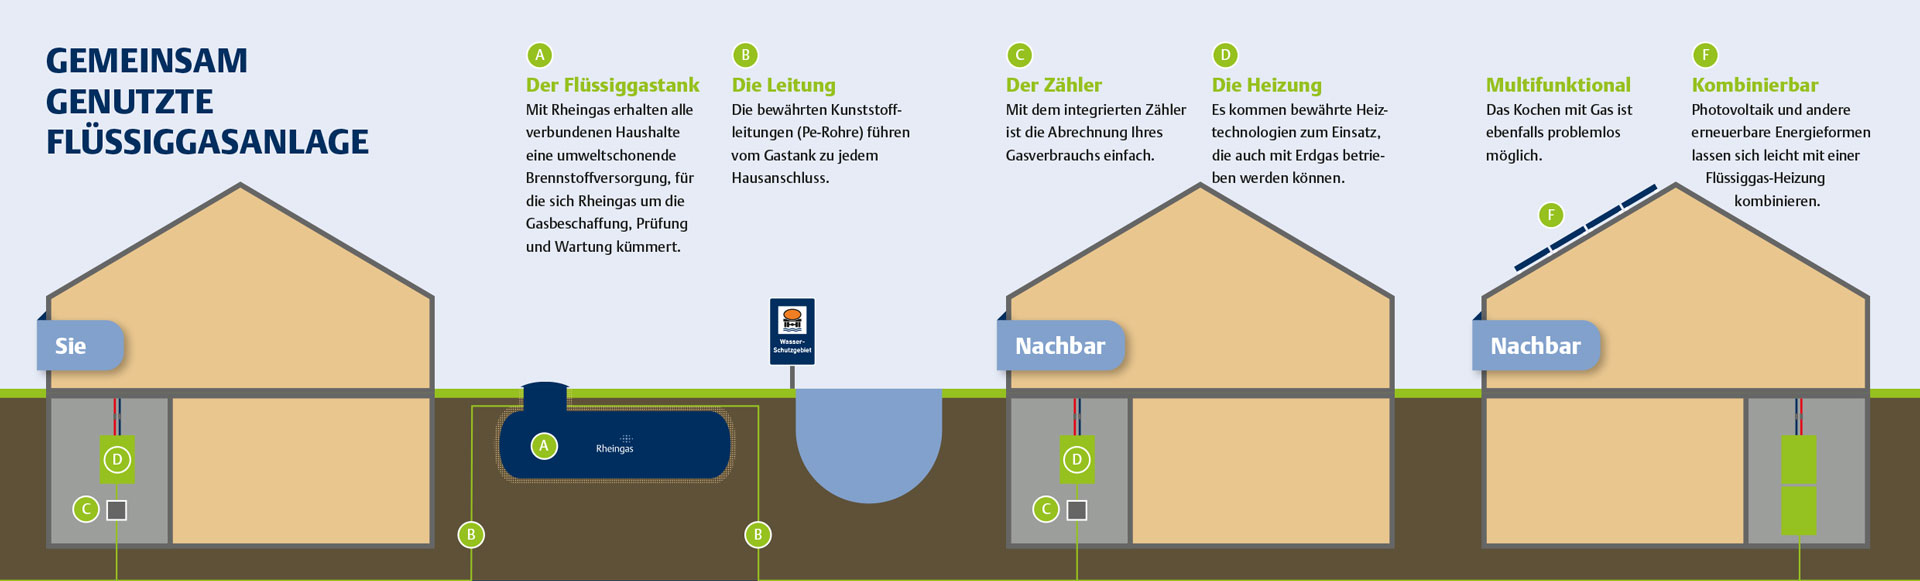 Infografik, die darstellt, wie eine gemeinsam genutzte Flüssiggasanlage in Ihrer Nachbarschaft aussehen könnte.